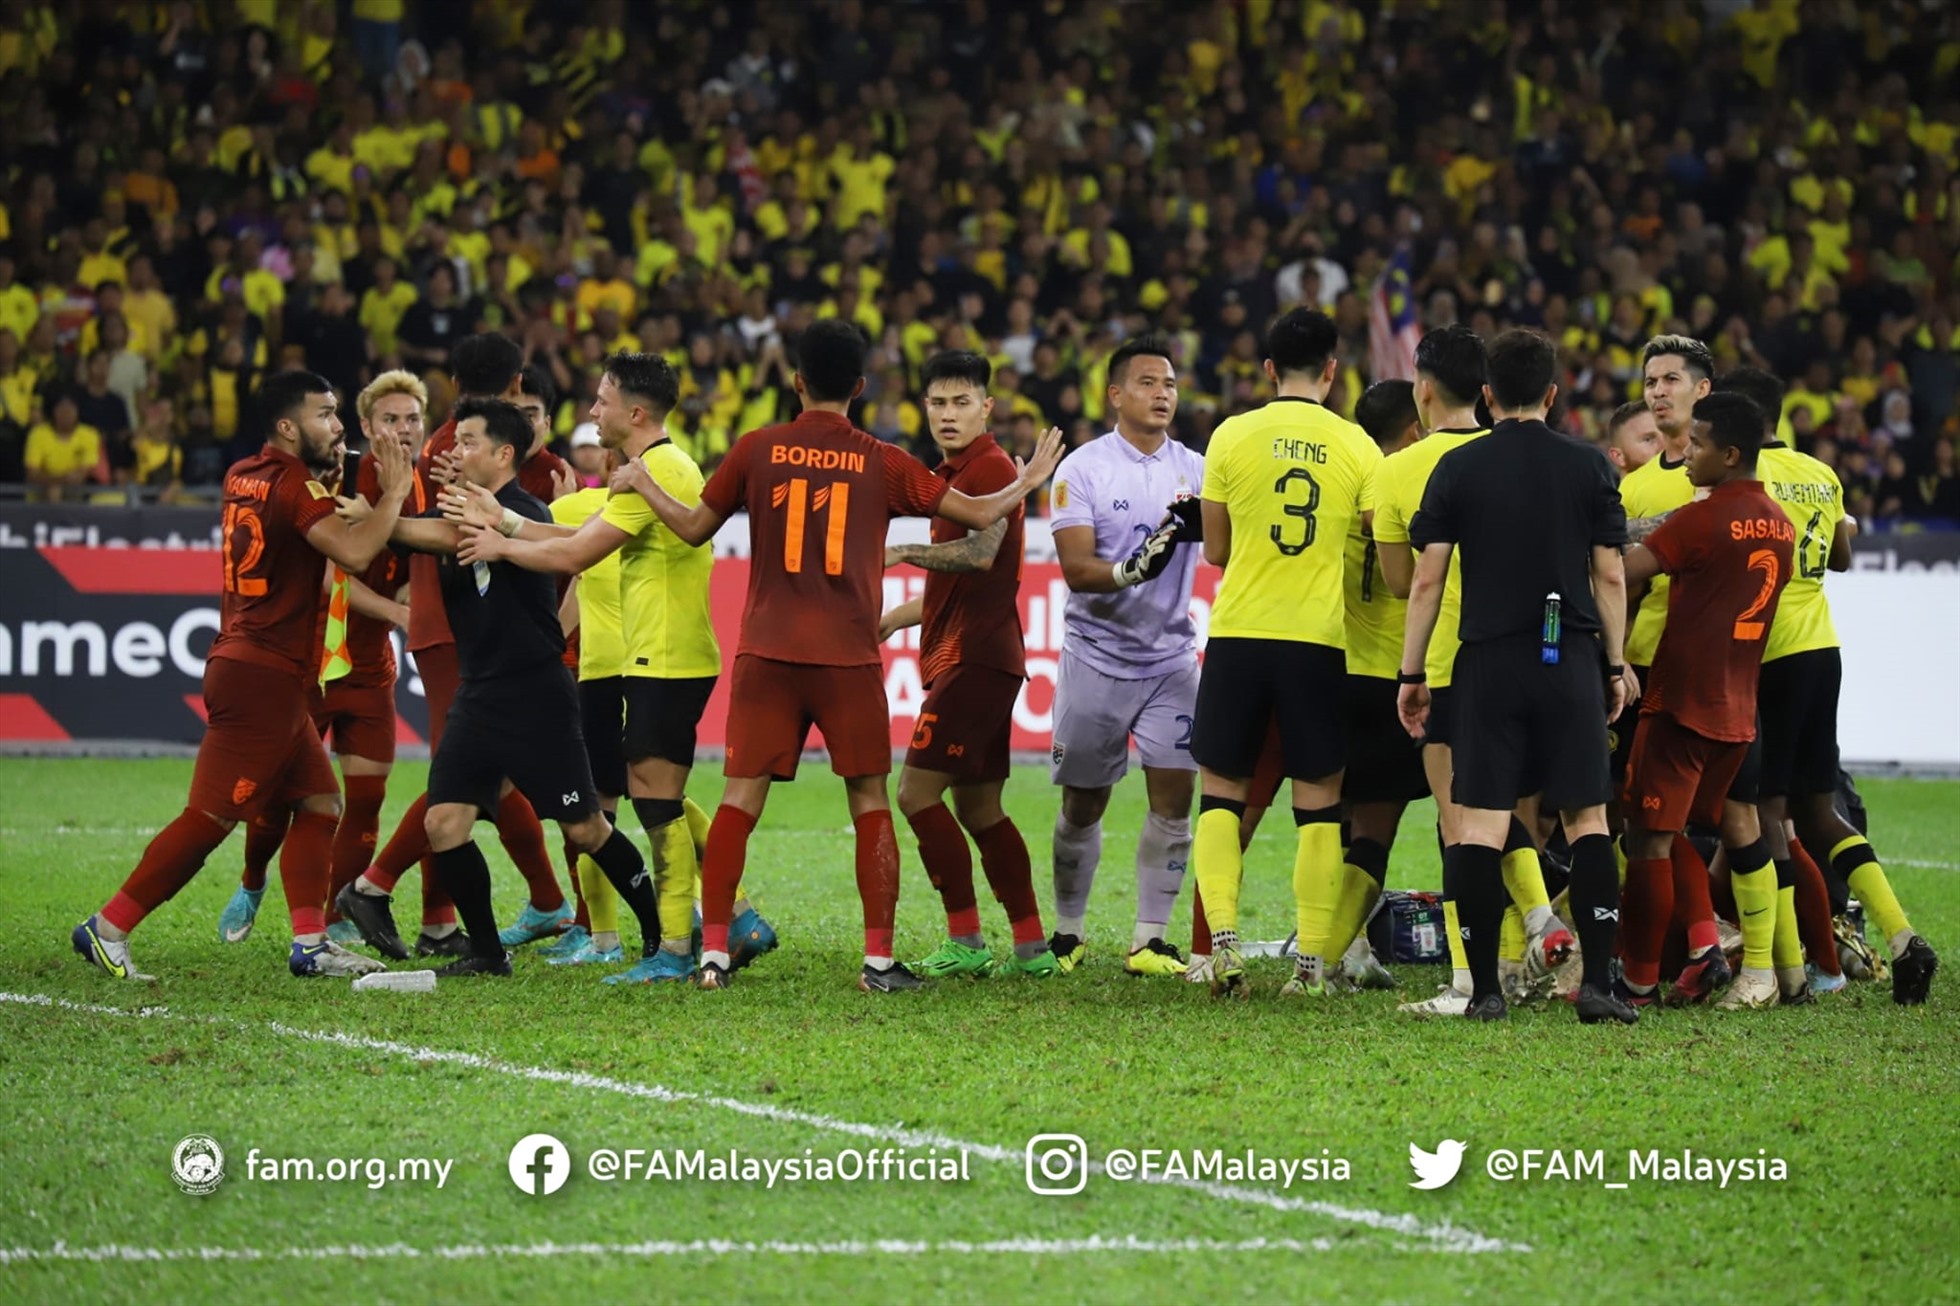 Tuy nhiên, sau khi tham khảo các trợ lý, trọng tài người Hàn Quốc đã từ chối bàn thắng của Malaysia khi cho rằng cầu thủ Malaysia đã phạm lỗi với đối phương trước khi bóng đi vào lưới.